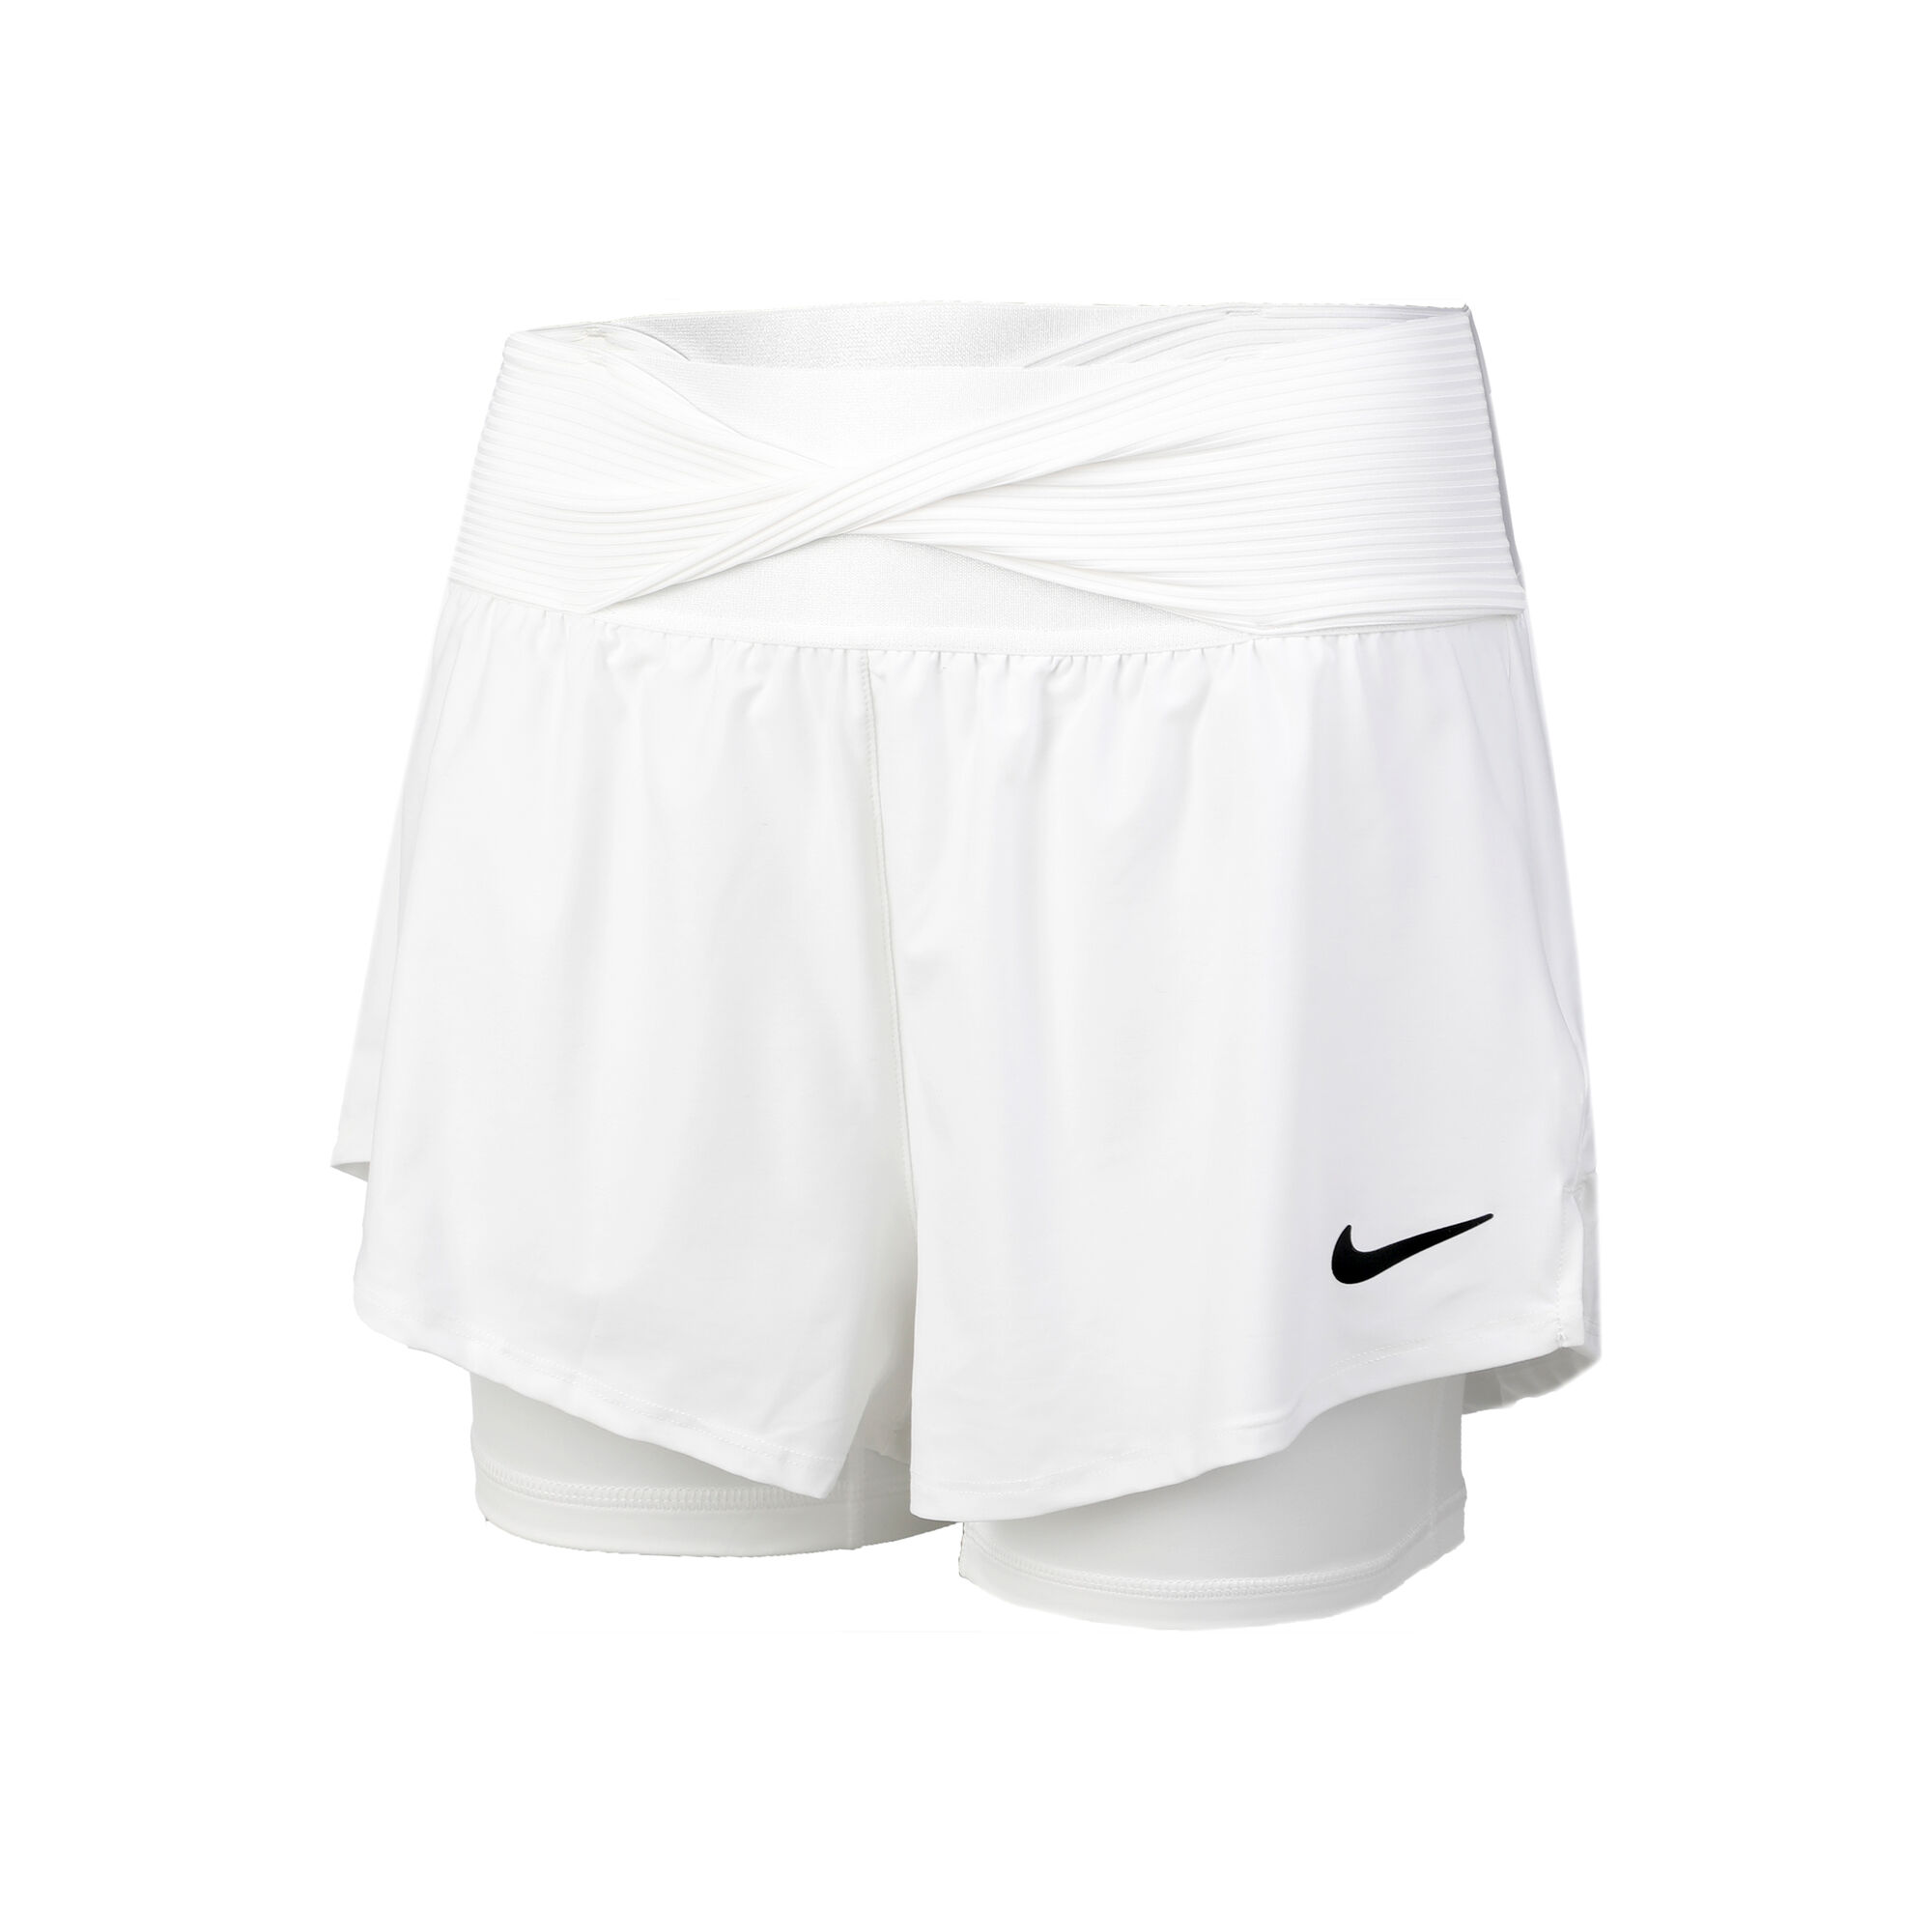 Court Advantage Dri-Fit Shorts Women - White